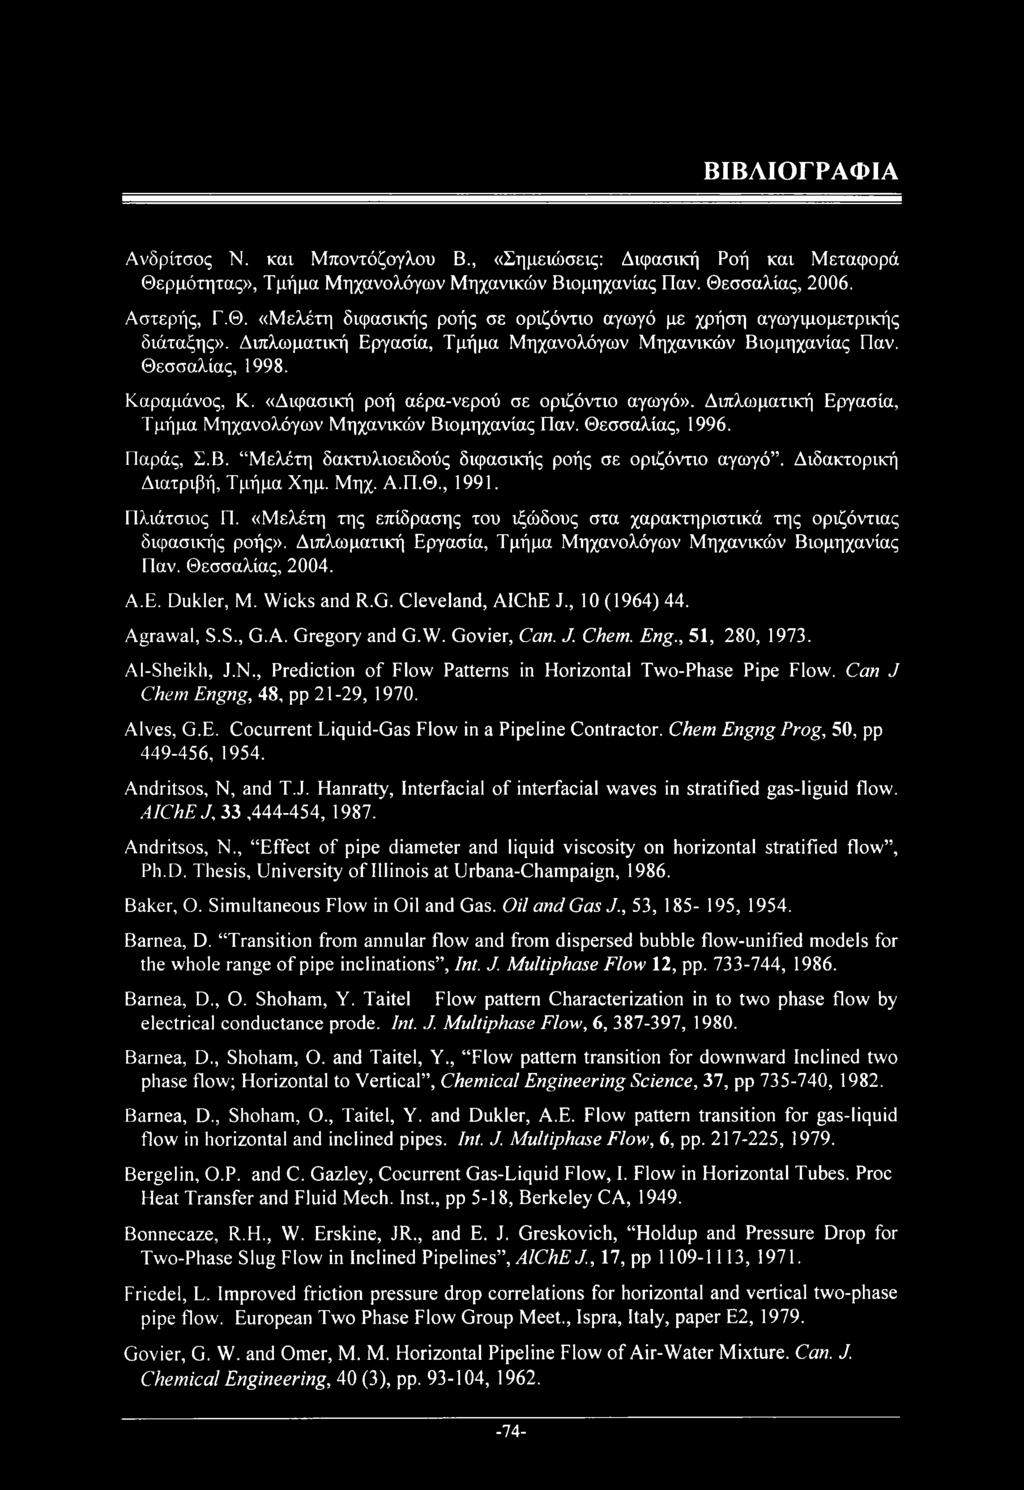 Διπλωματική Εργασία, Τμήμα Μηχανολόγων Μηχανικών Βιομηχανίας Παν. Θεσσαλίας, 1996. Παράς, Σ.Β. Μελέτη δακτυλιοειδούς διφασικής ροής σε οριζόντιο αγωγό. Διδακτορική Διατριβή, Τμήμα Χημ. Μηχ. Α.Π.Θ., 1991.